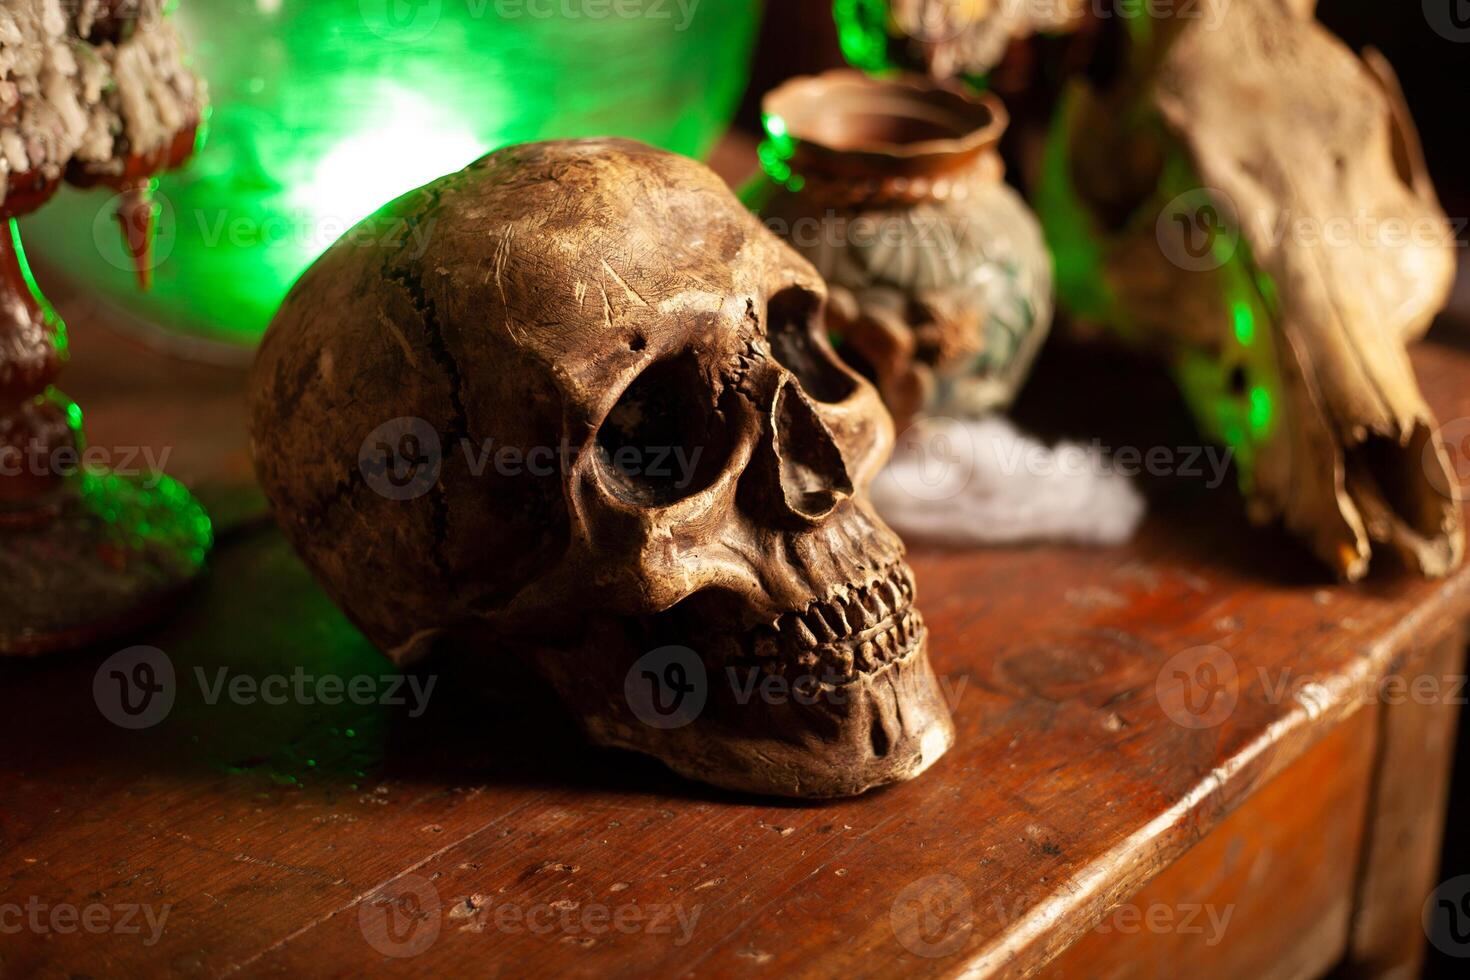 Halloween sfondo scaffali con alchimia utensili cranio ragnatela bottiglia con veleno candele foto